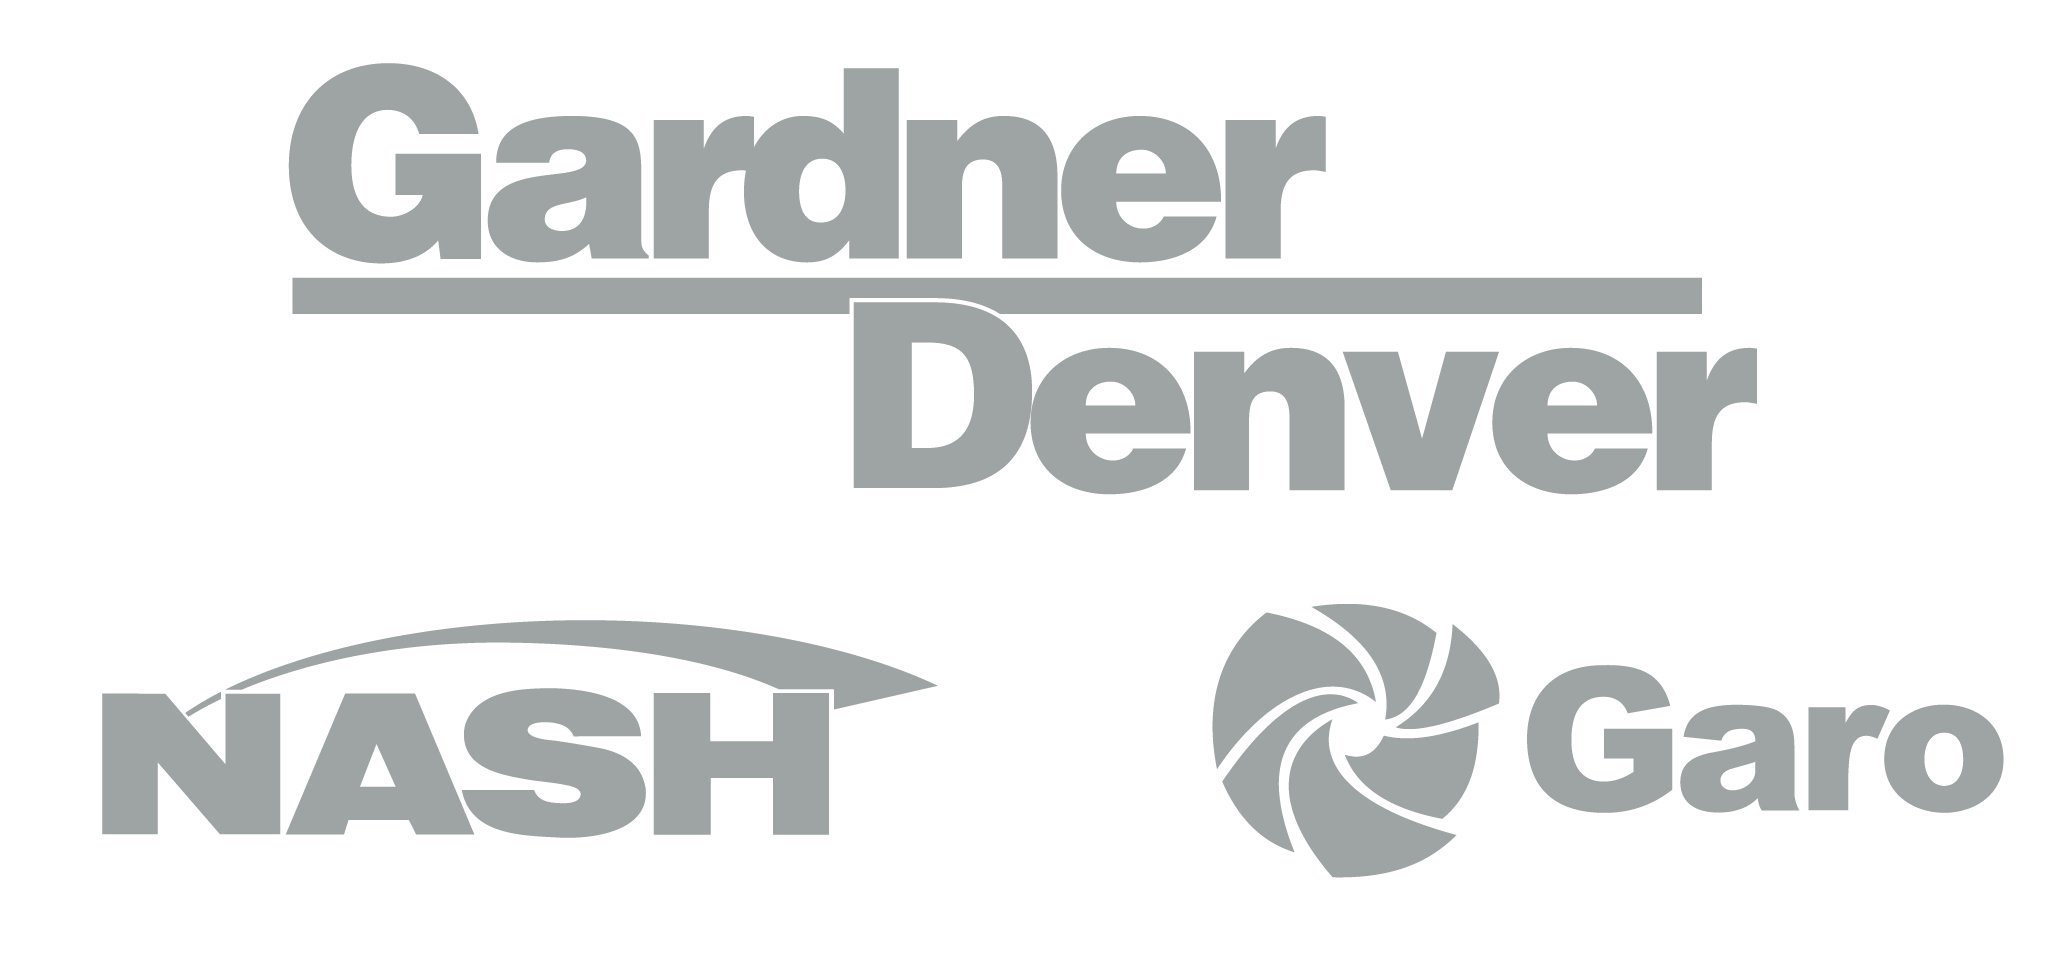 Logotipos Gardner Denver, Nash e Garo em cinza claro